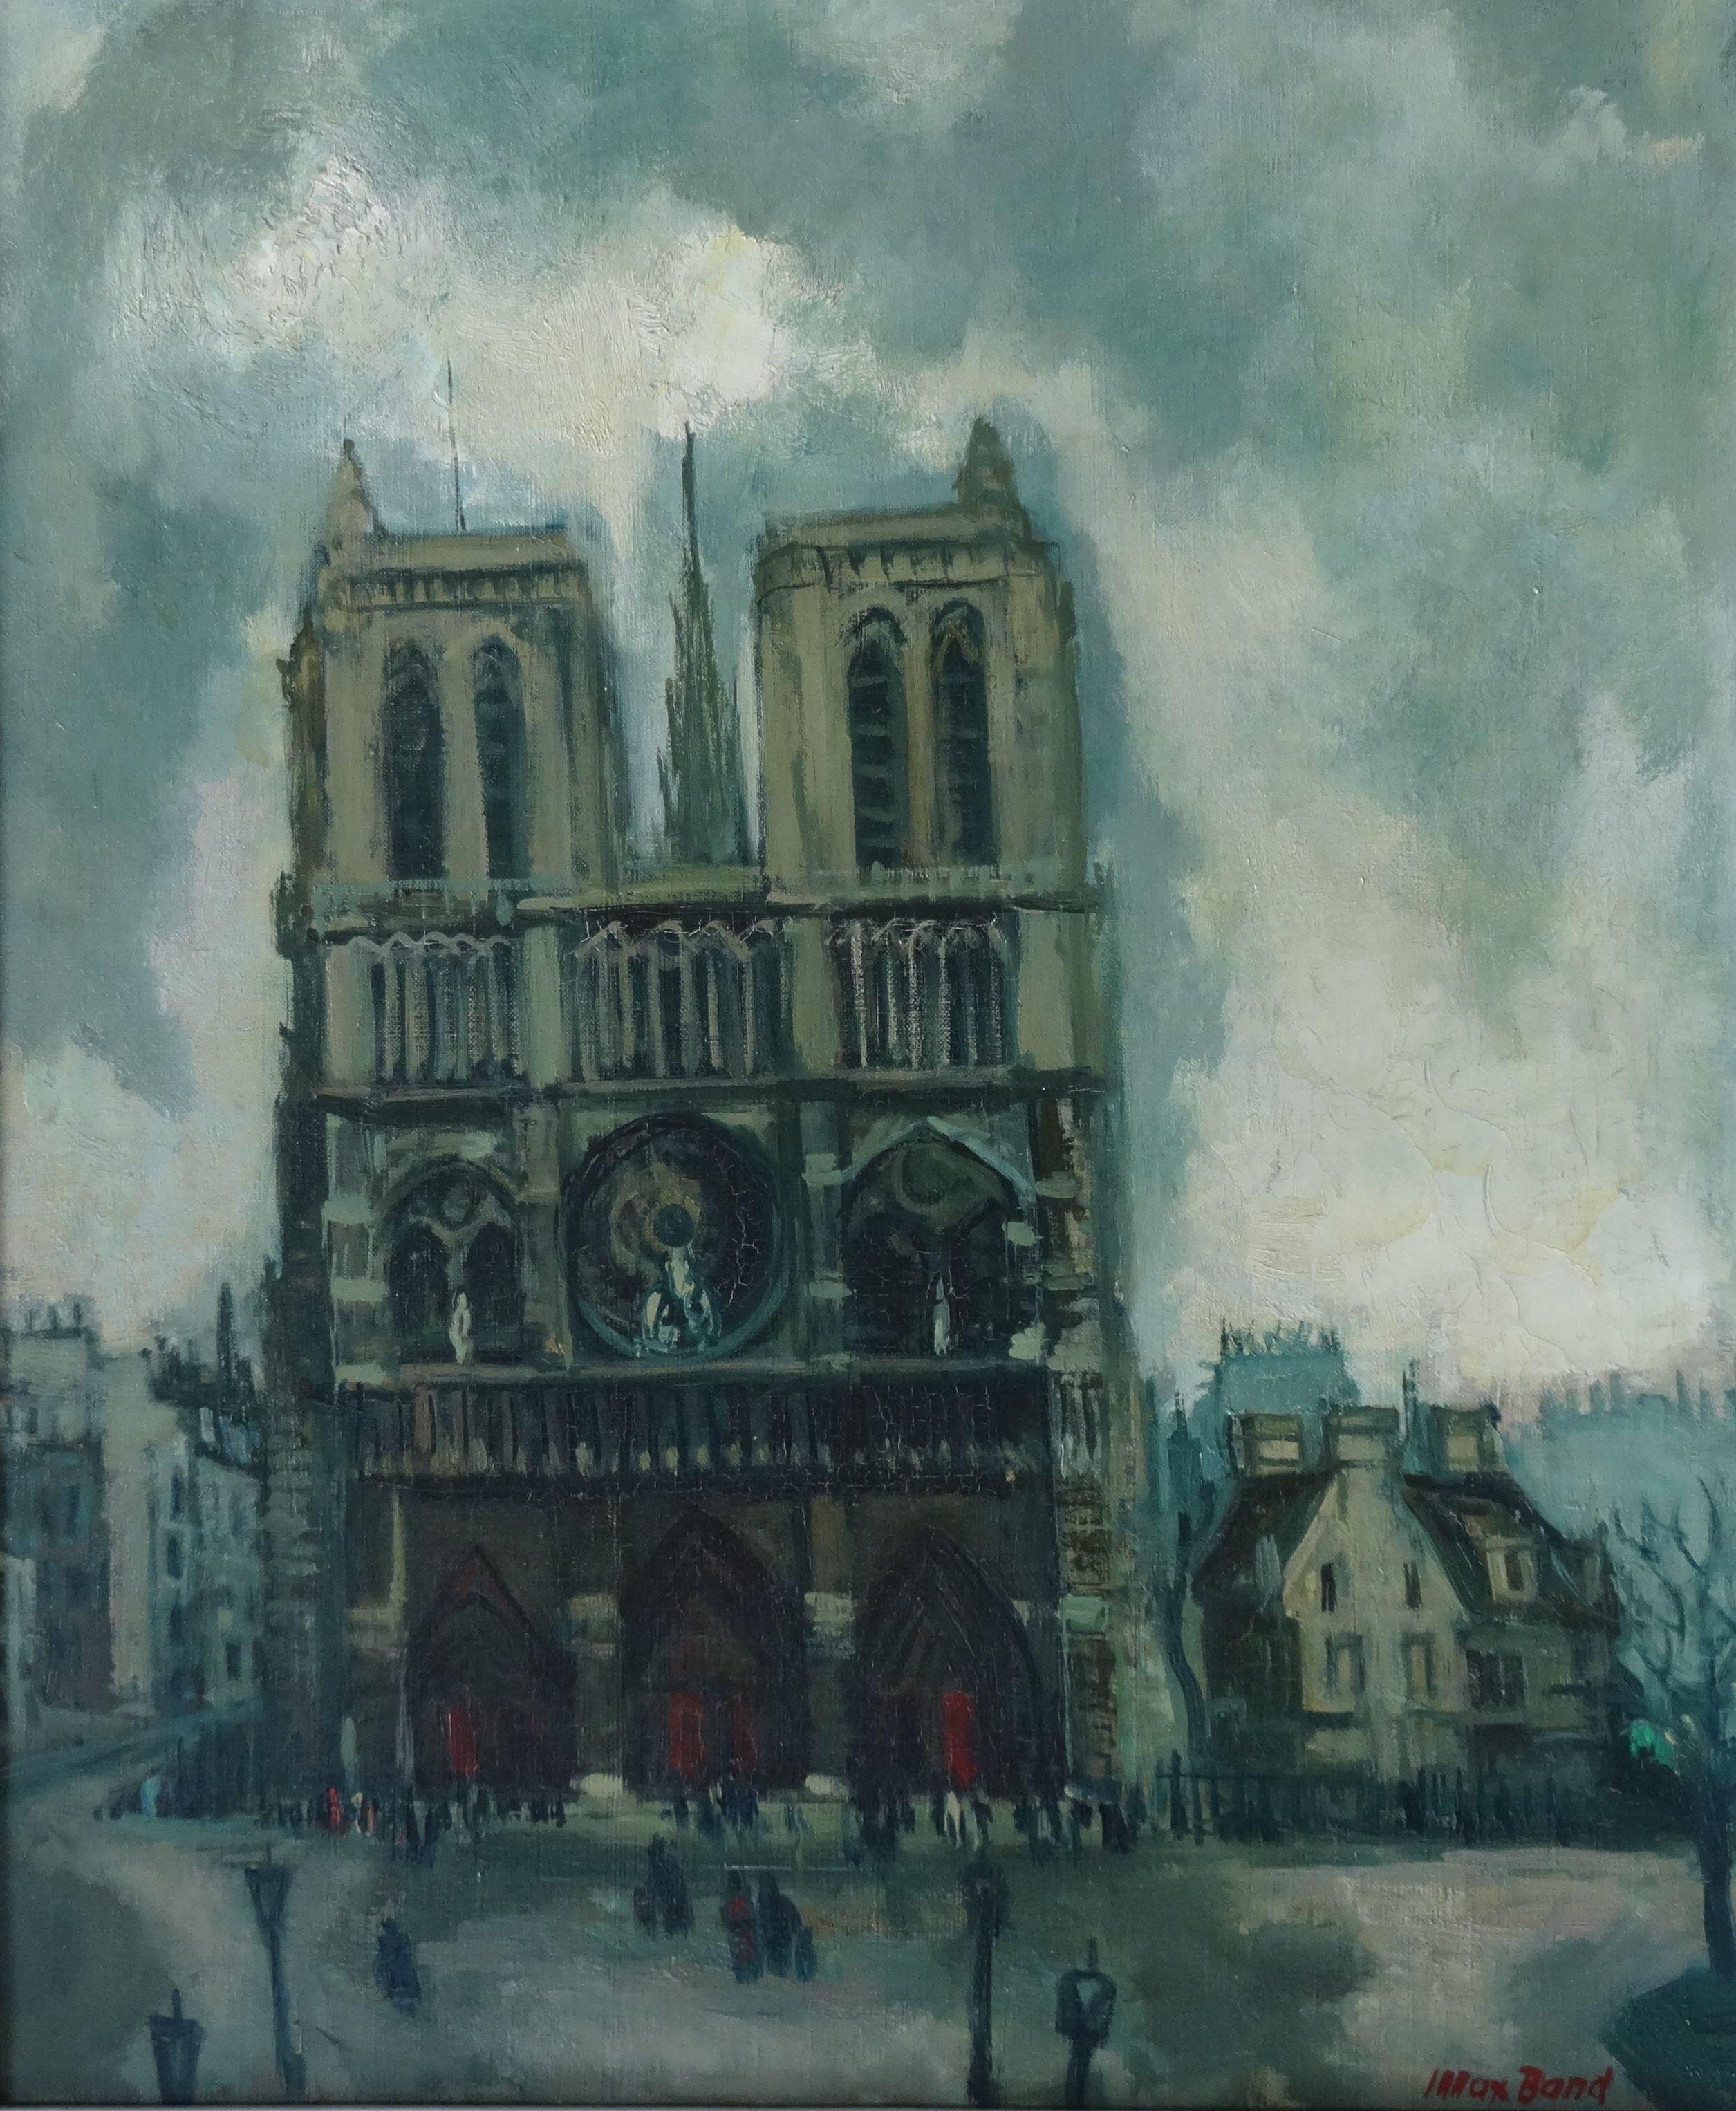 Max Band Landscape Painting - Notre-Dame de Paris. Oil on canvas, 65x54 cm